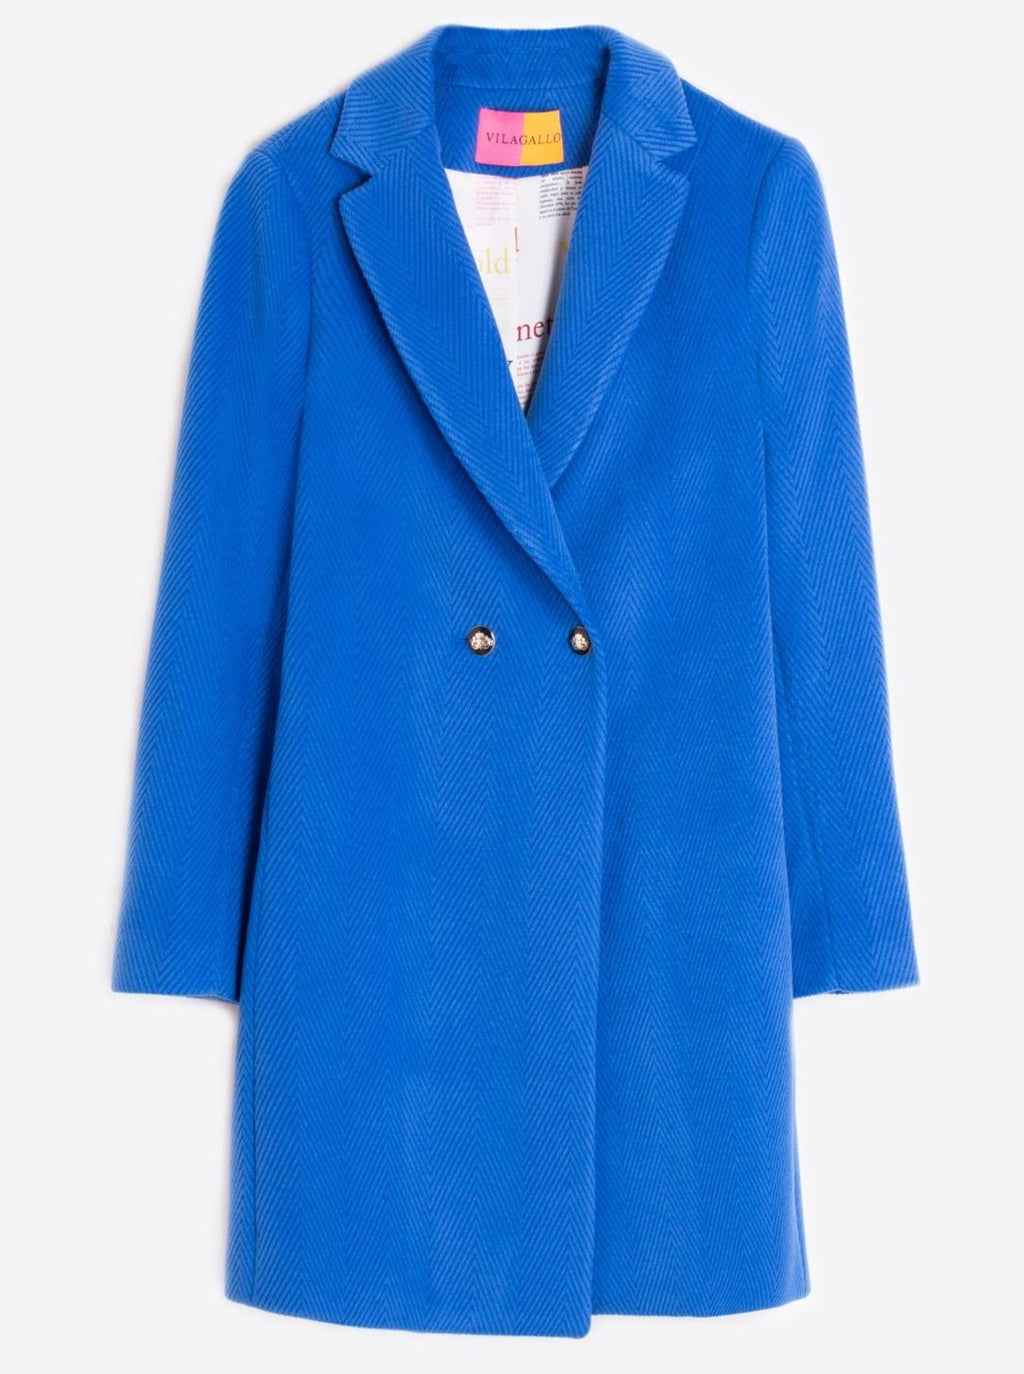 Vilagallo Mid Coat ABEL Herringbone Blue - Sub Couture